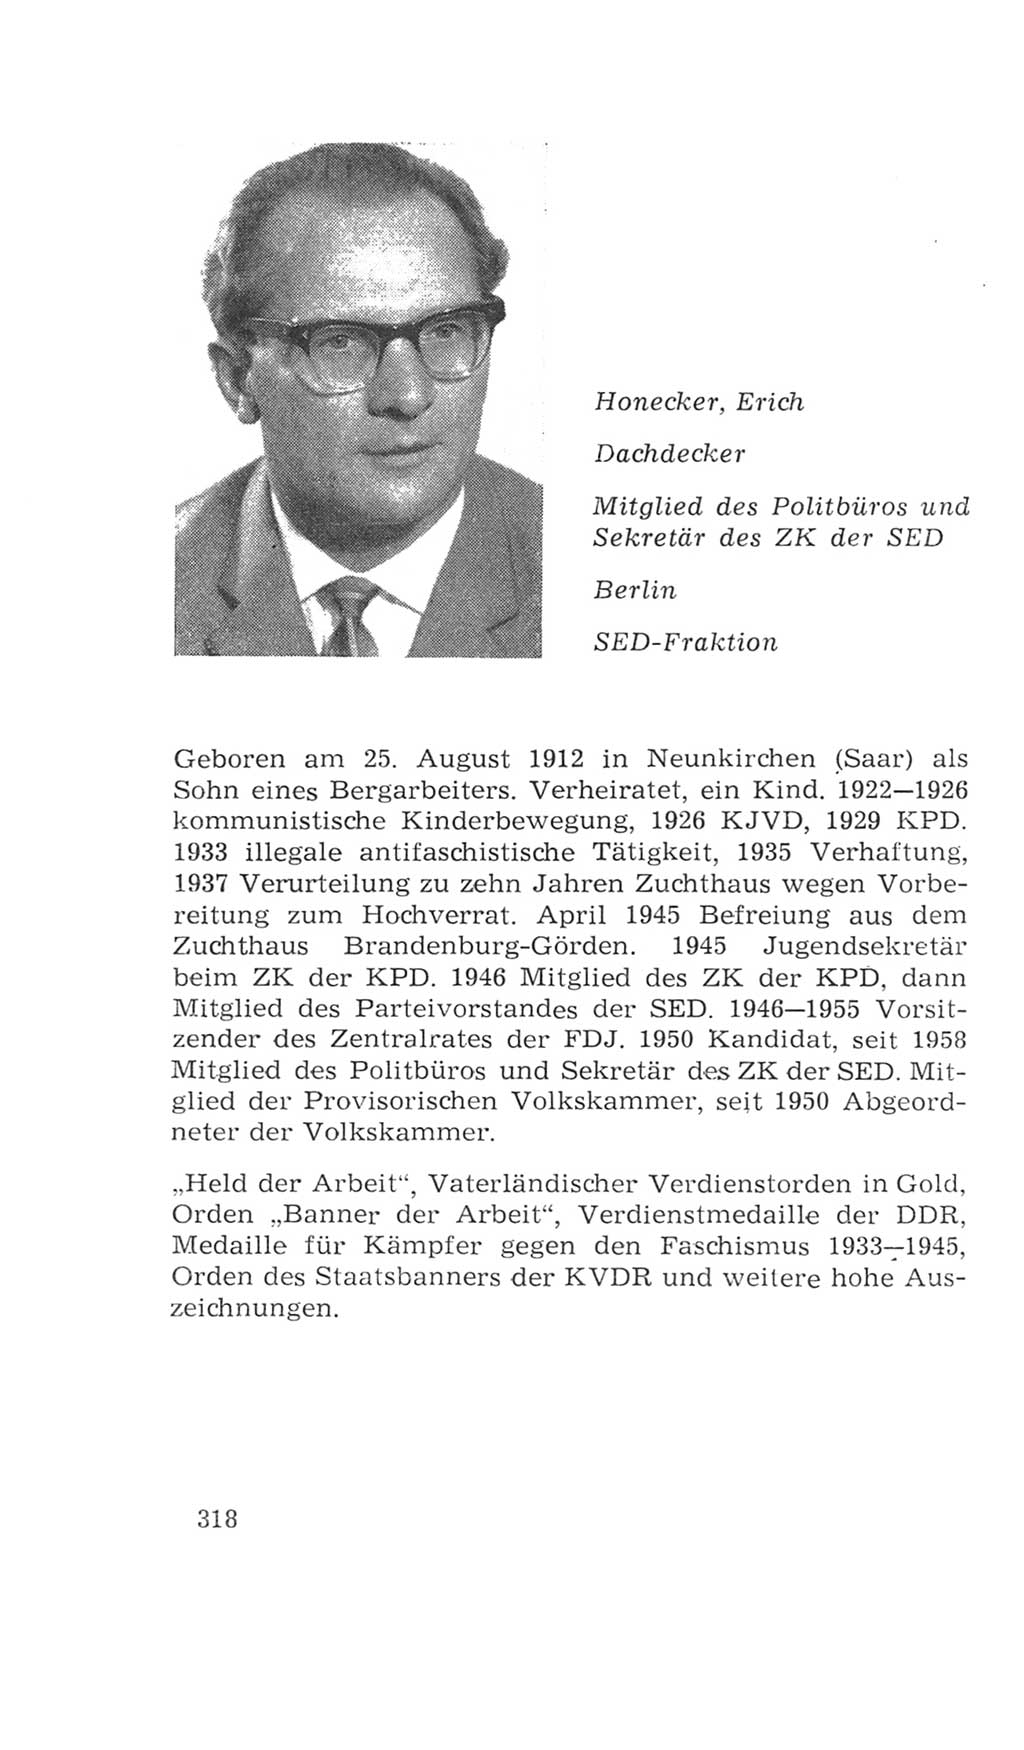 Volkskammer (VK) der Deutschen Demokratischen Republik (DDR), 4. Wahlperiode 1963-1967, Seite 318 (VK. DDR 4. WP. 1963-1967, S. 318)